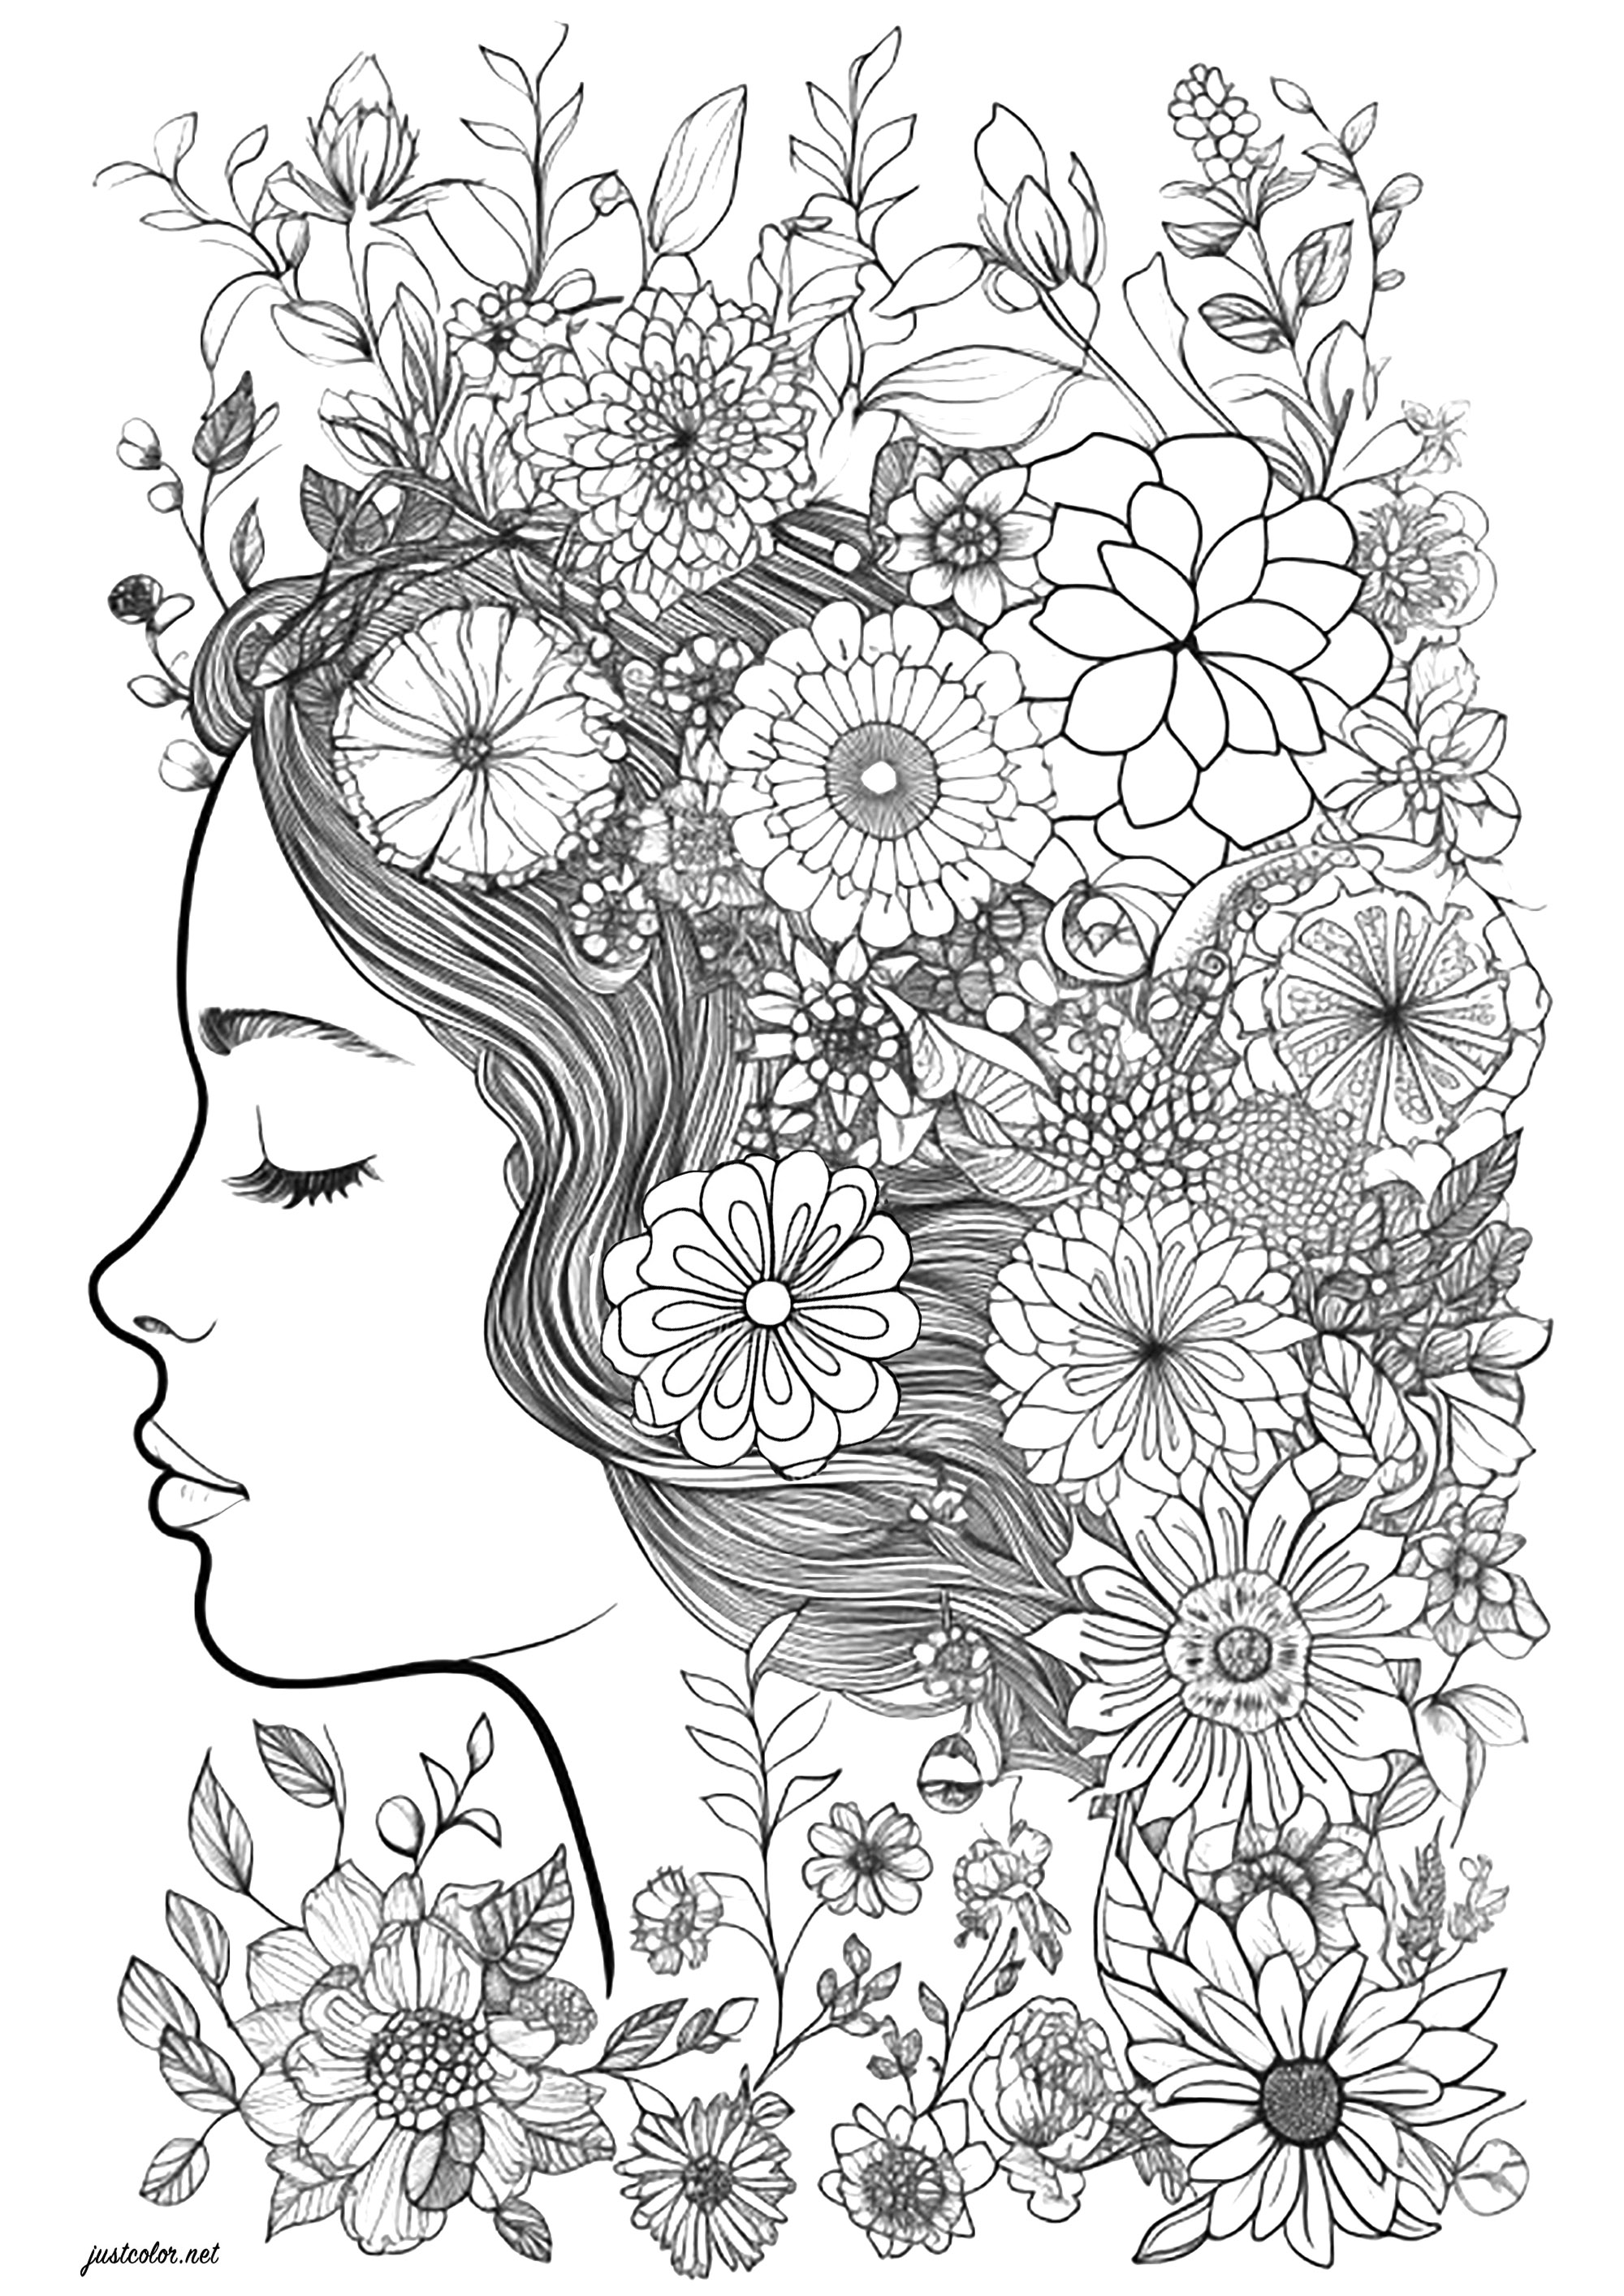 Rostro de una mujer con los ojos cerrados, rodeada de floresEspléndido colorido del rostro de una mujer de perfil, cuyo cabello está lleno de hermosas flores